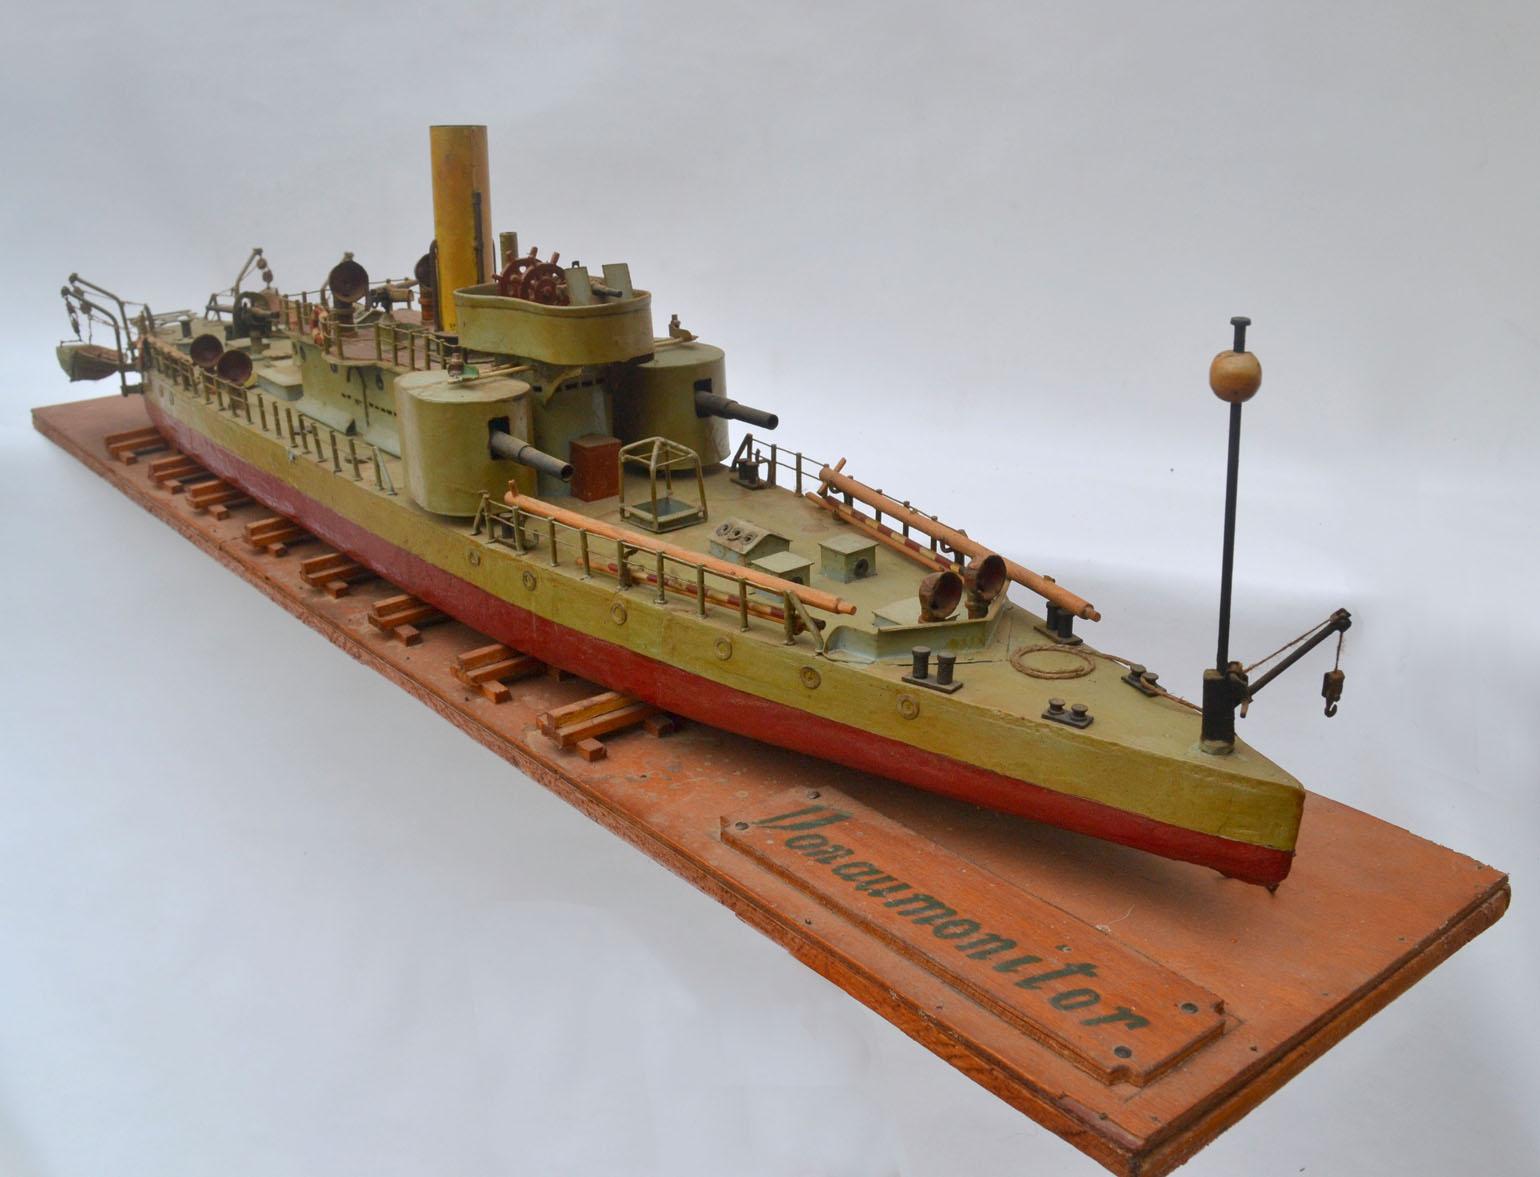 Ein schönes Werftmodell eines frühen Torpedoschiffs. Dieses Modell eines Torpedo-Kriegsbootes überwachte die Donau vom späten 19. bis zum frühen 20. Jahrhundert. Sie wurde Anfang bis Mitte des 20. Jahrhunderts in Handarbeit in Ostdeutschland oder